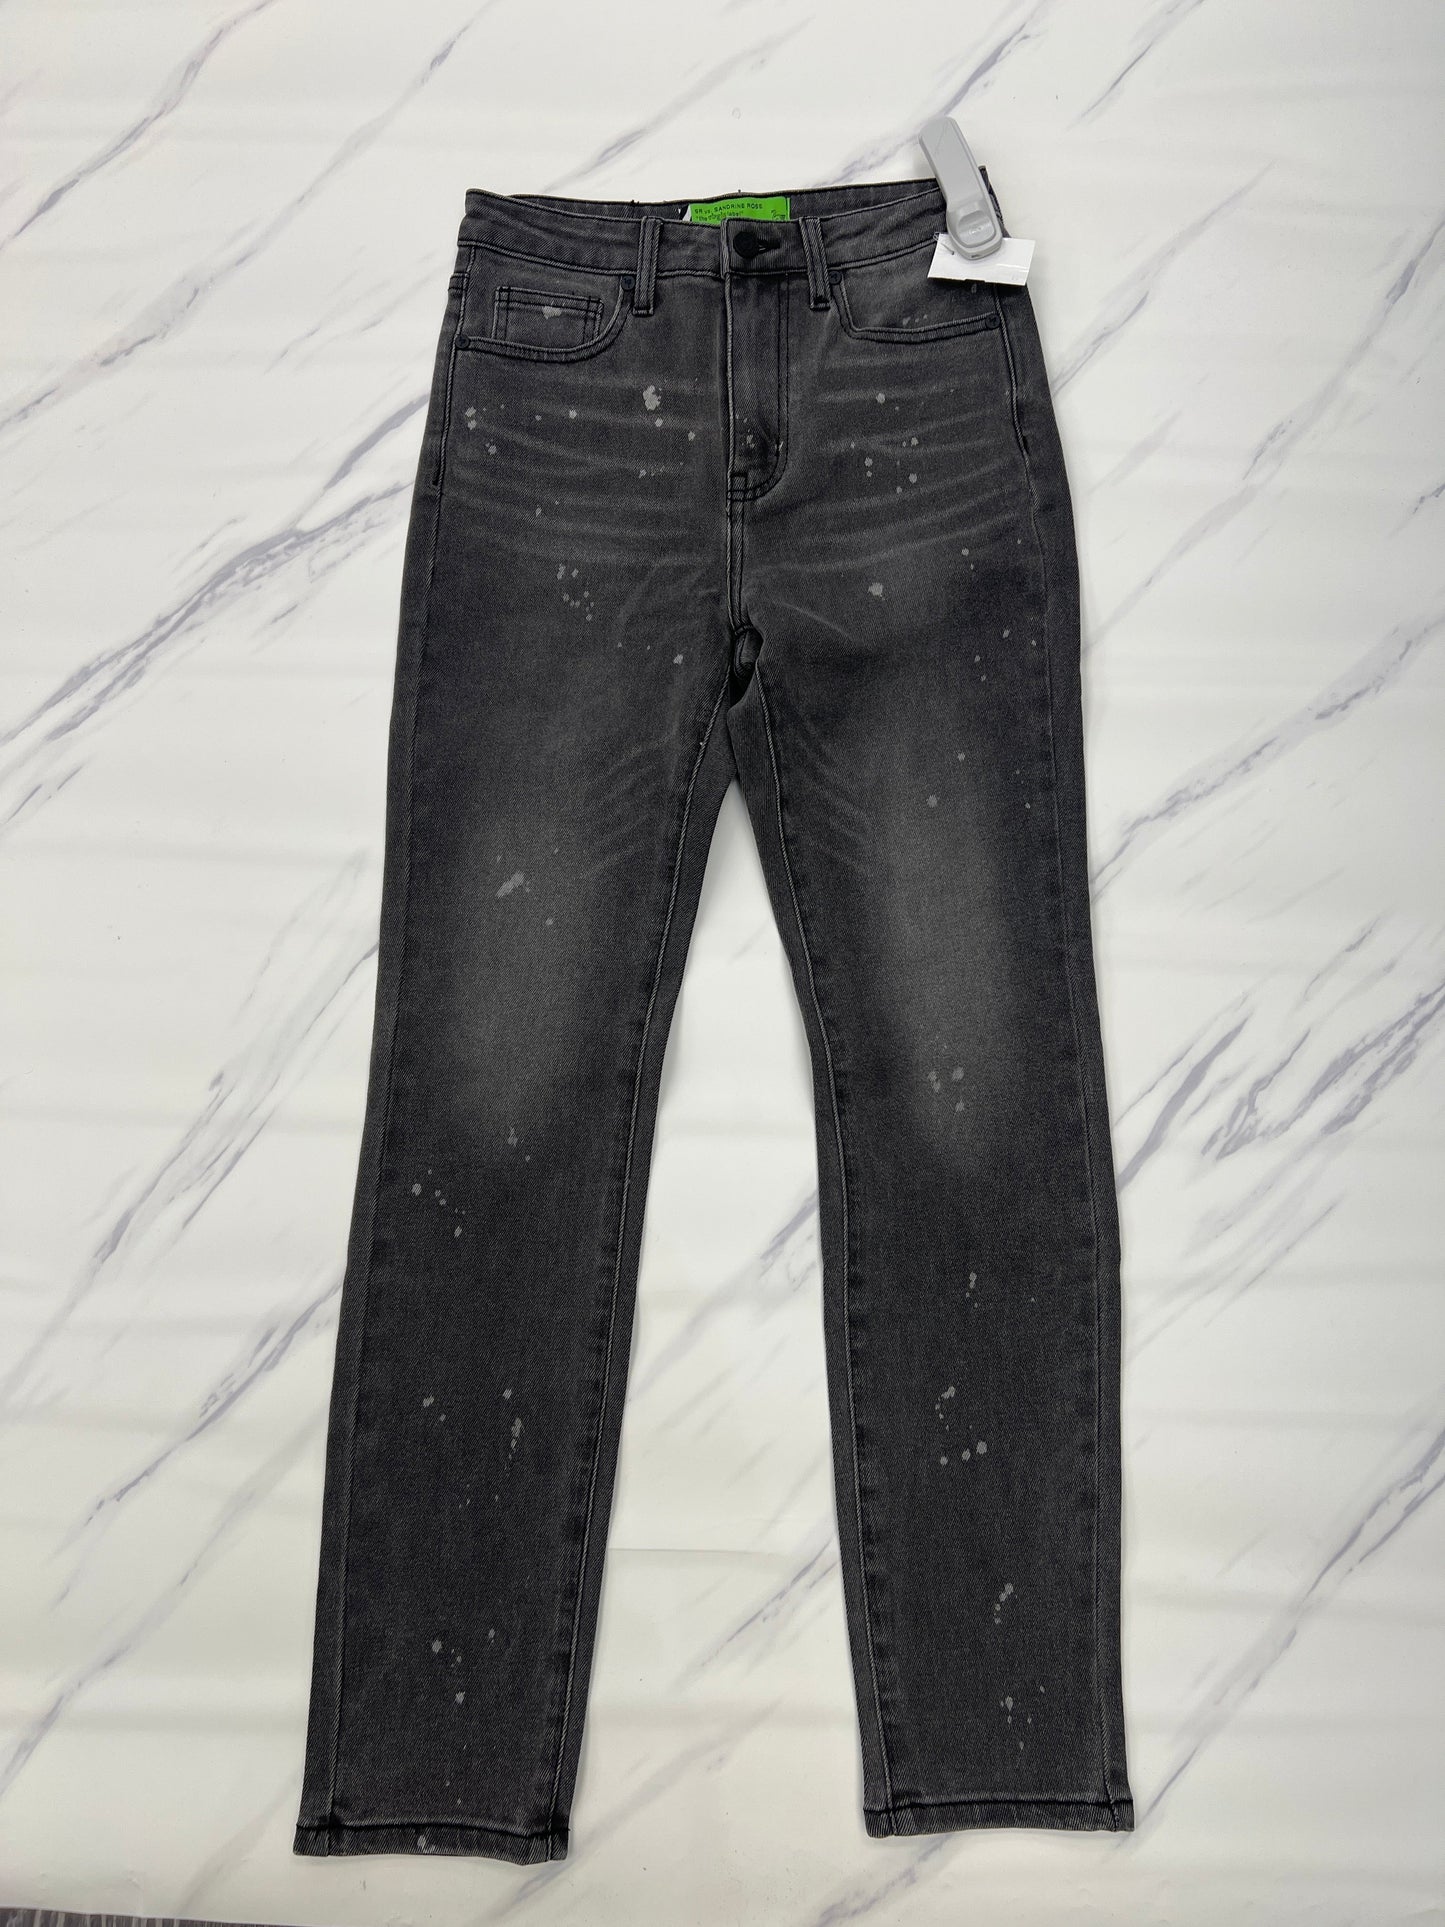 Jeans Designer Cmb, Size 0